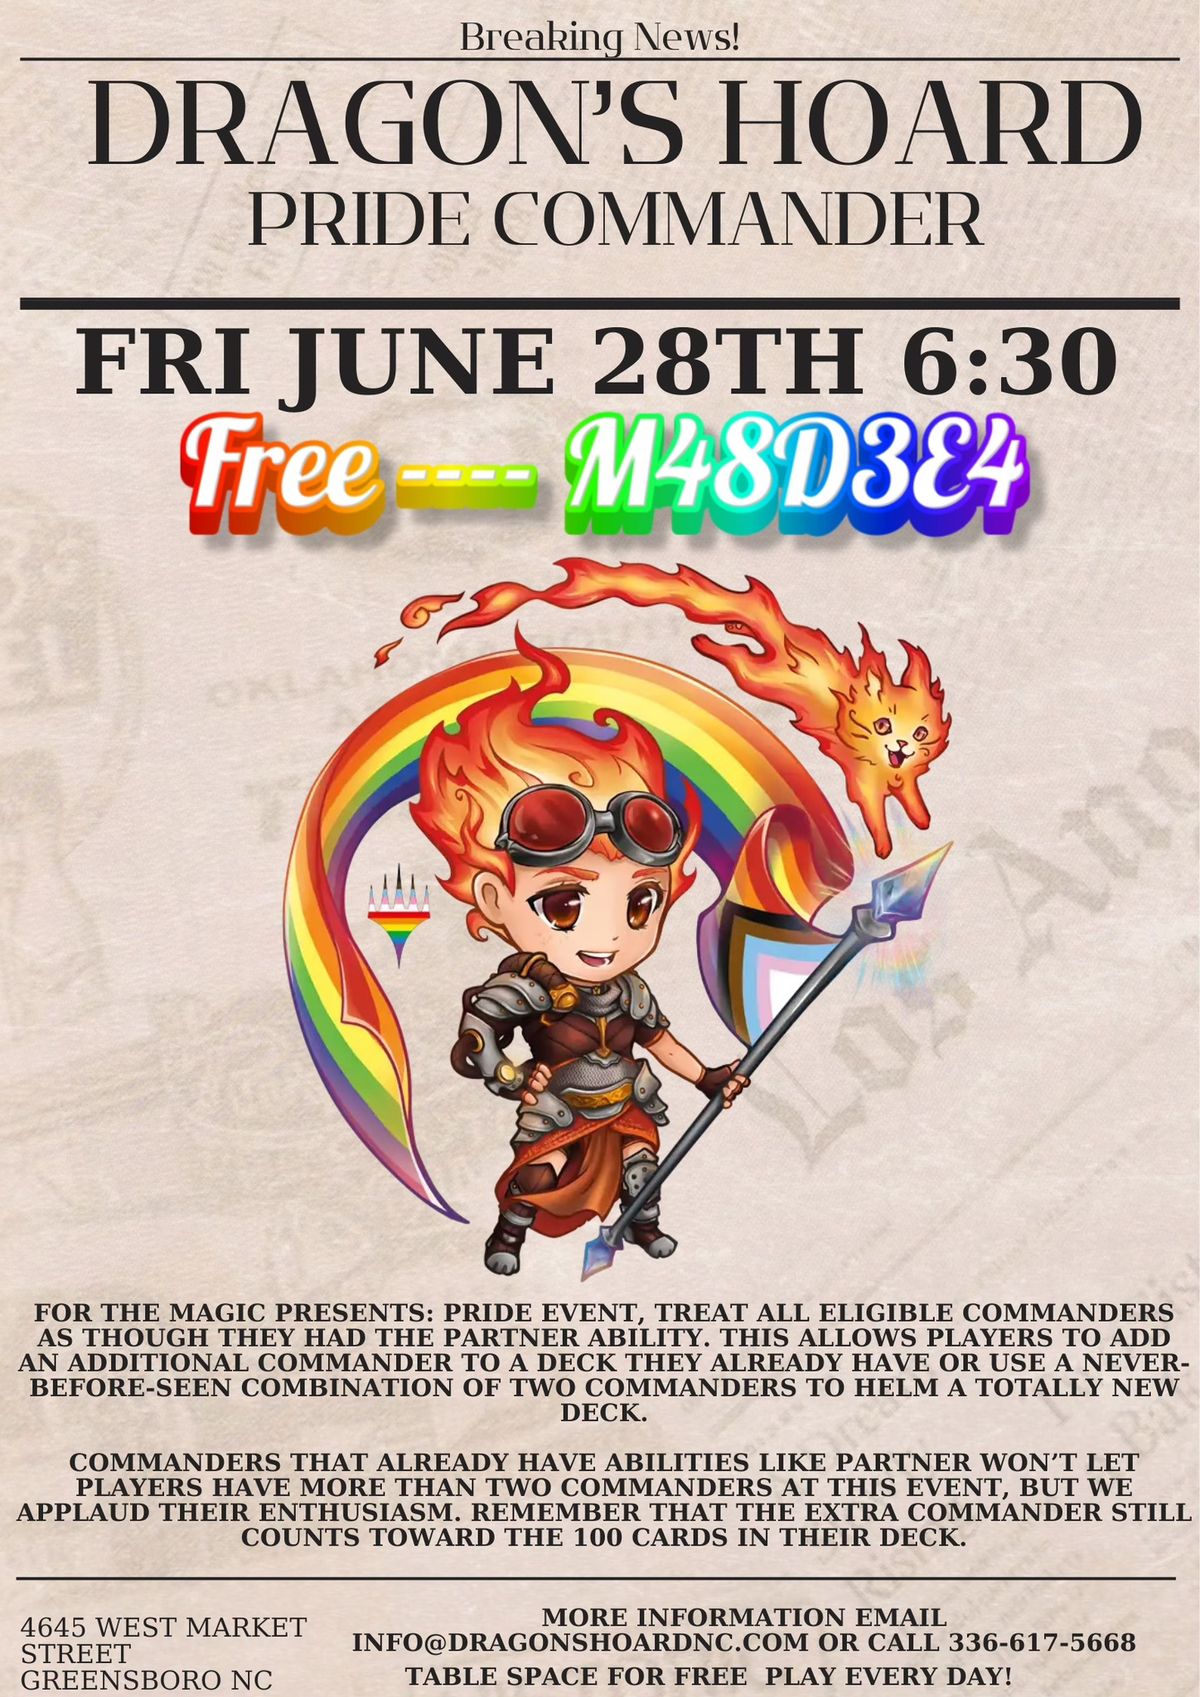 Magic Presents: Pride at Dragons Hoard June 28th